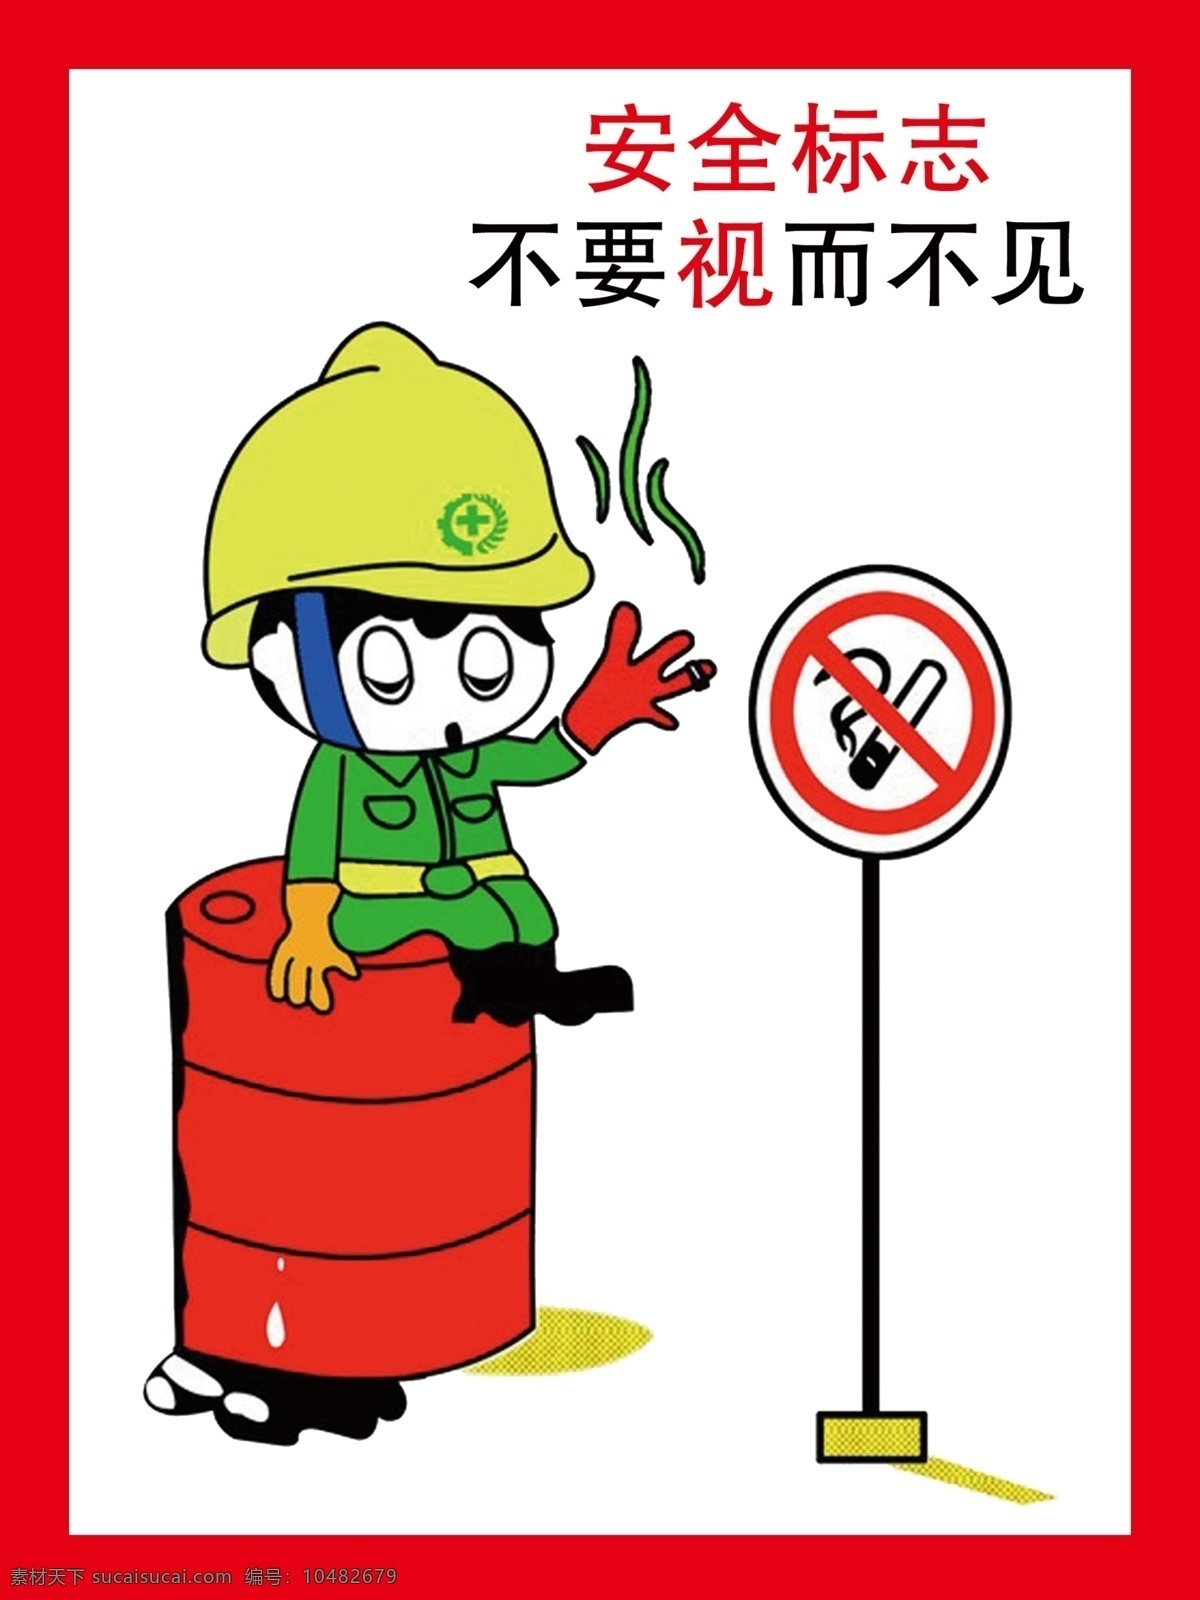 安全 标志 不要 视而不见 安全标志 动漫动画 动漫人物 禁止标识 禁止吸烟 不要视而不见 施工场地 展板 公益展板设计